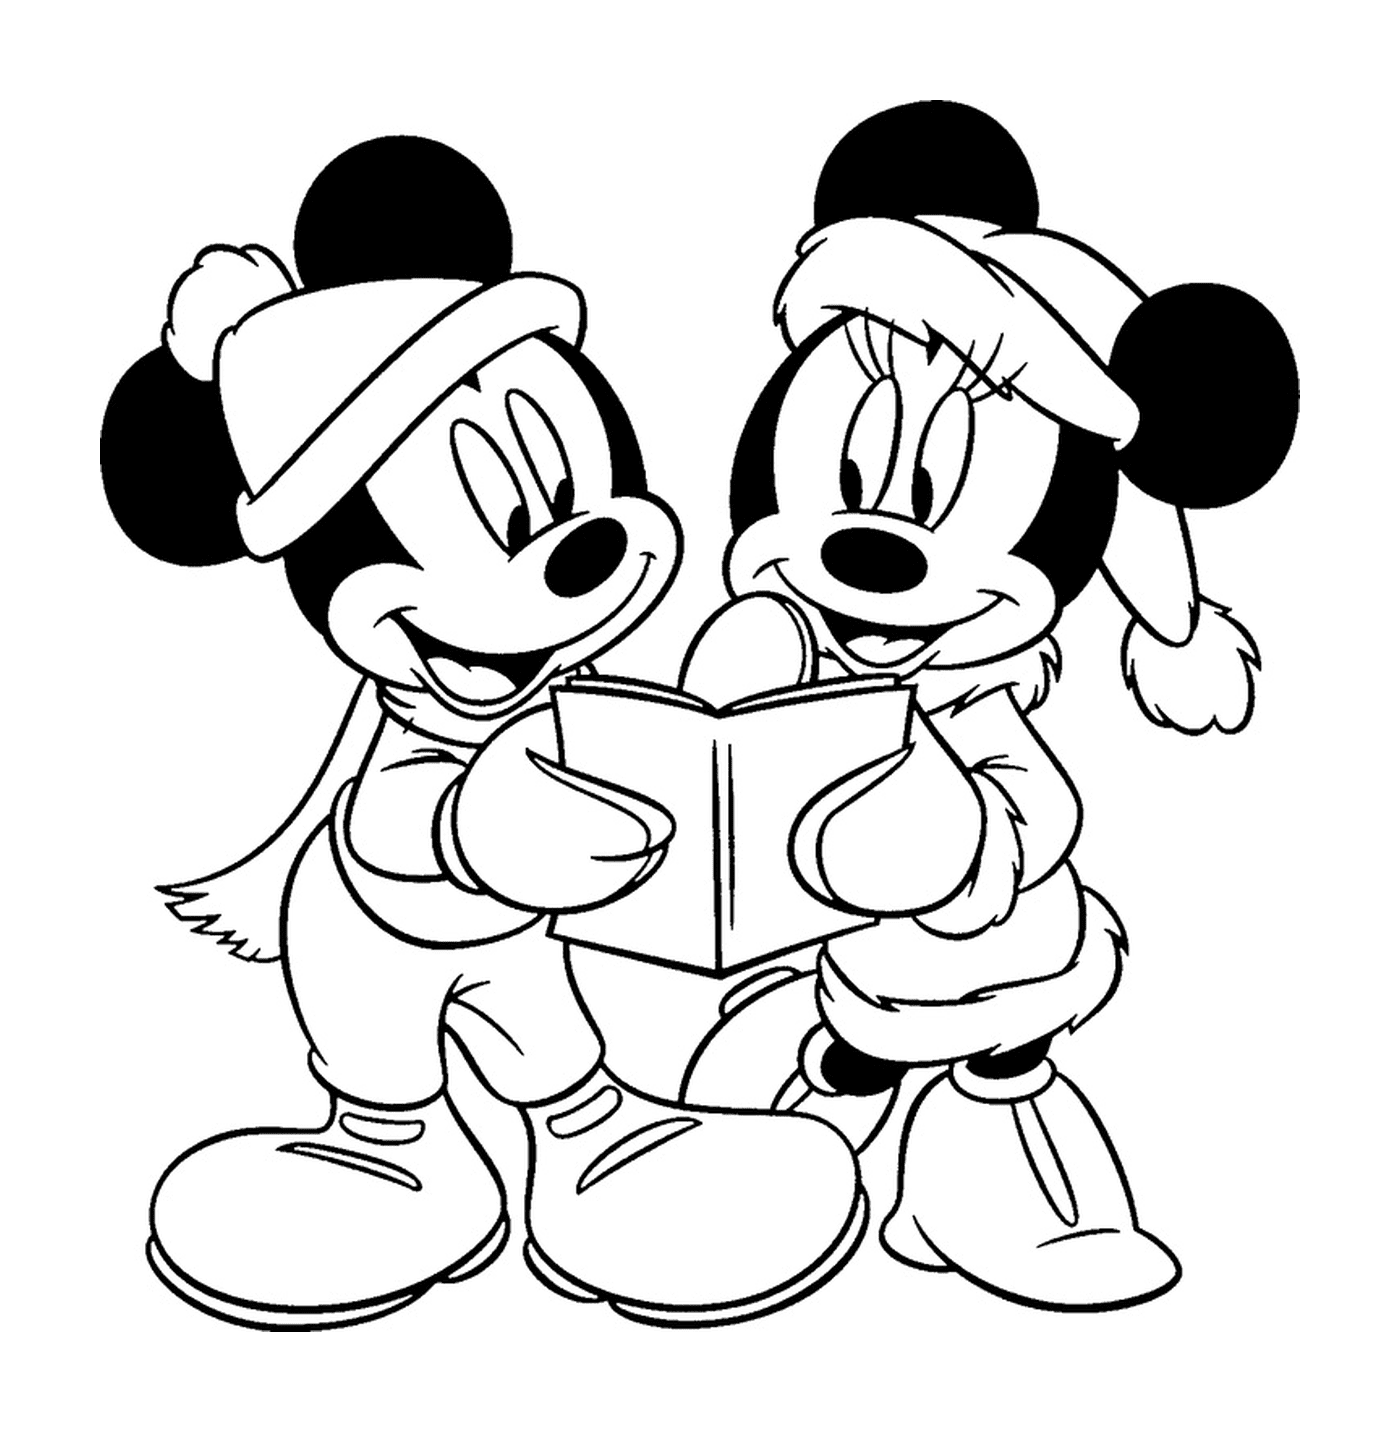  Mickey e Minnie leggevano libri 